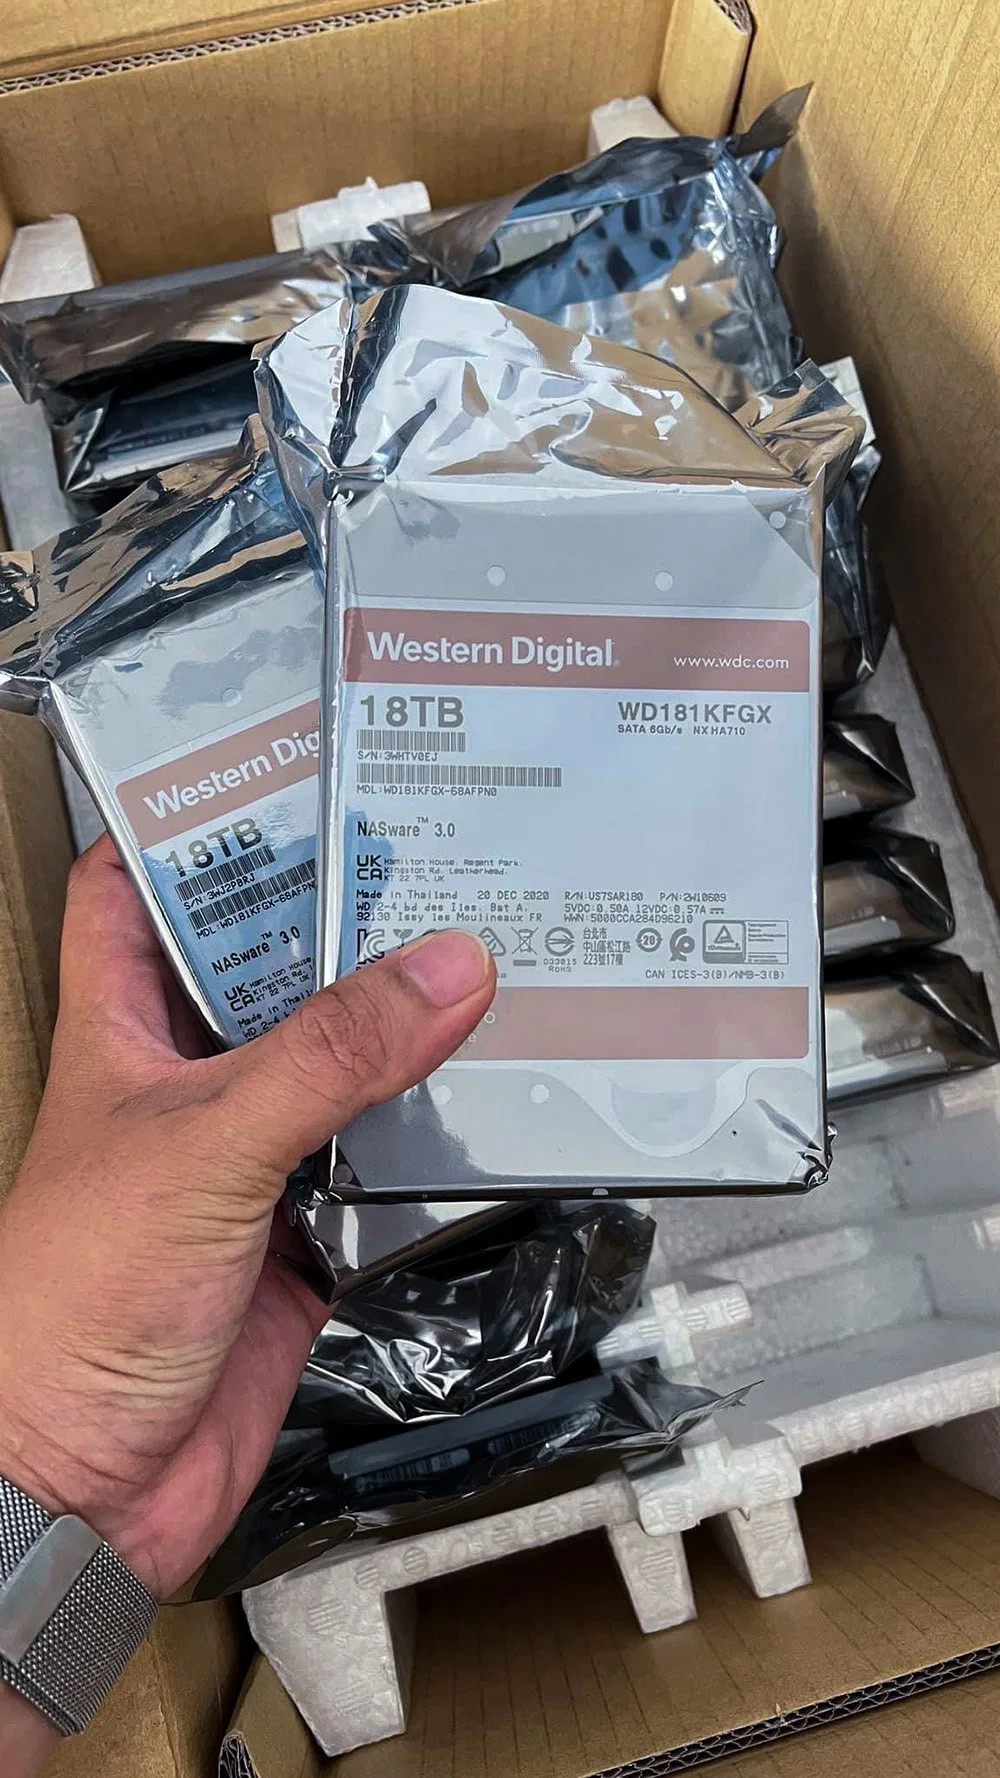 Western Digital Red PRO 18 Tb SSD/HDD 7200rpm SATA 6GB/S Internal Nas Hard Drive (WD181KFGX) Wd SSD/HDD